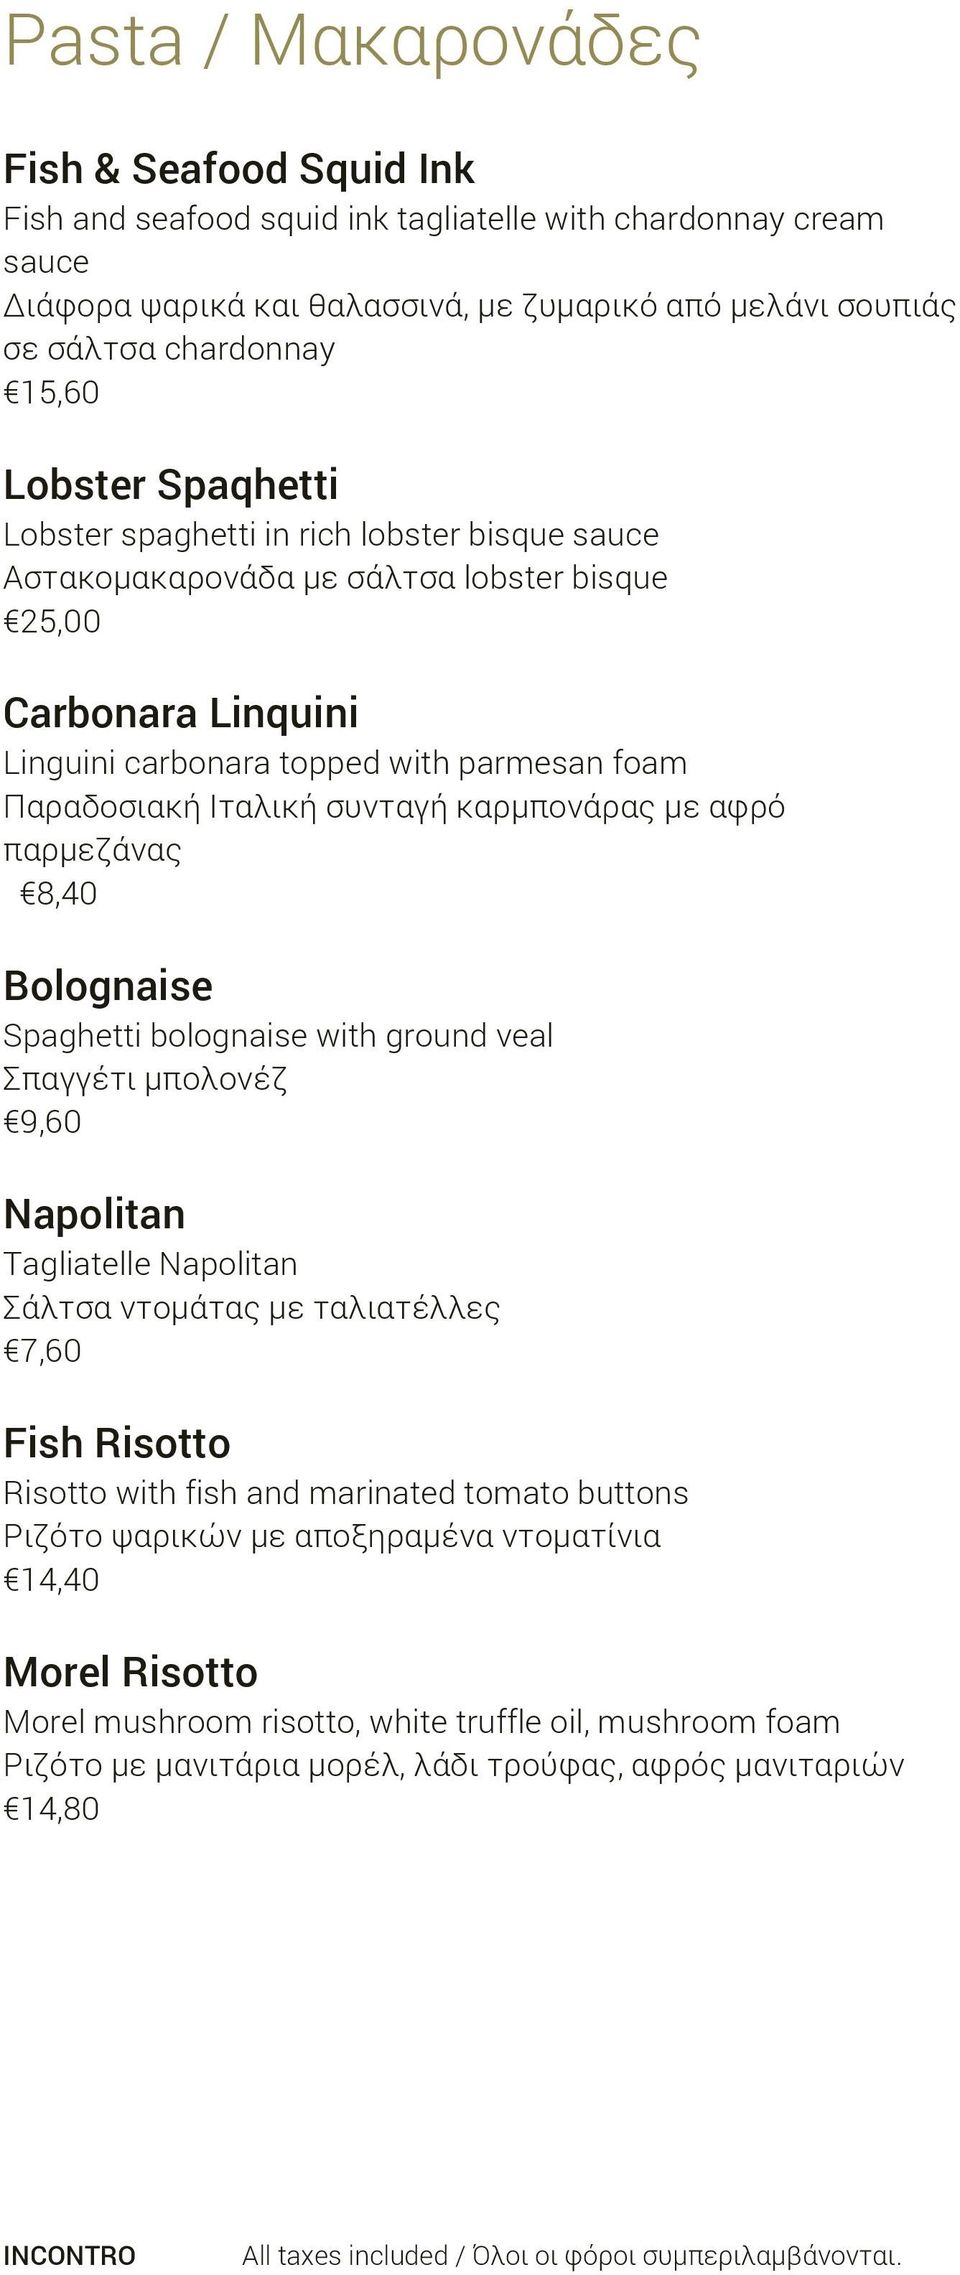 Ιταλική συνταγή καρμπονάρας με αφρό παρμεζάνας 8,40 Bolognaise Spaghetti bolognaise with ground veal Σπαγγέτι μπολονέζ 9,60 Napolitan Tagliatelle Napolitan Σάλτσα ντομάτας με ταλιατέλλες 7,60 Fish